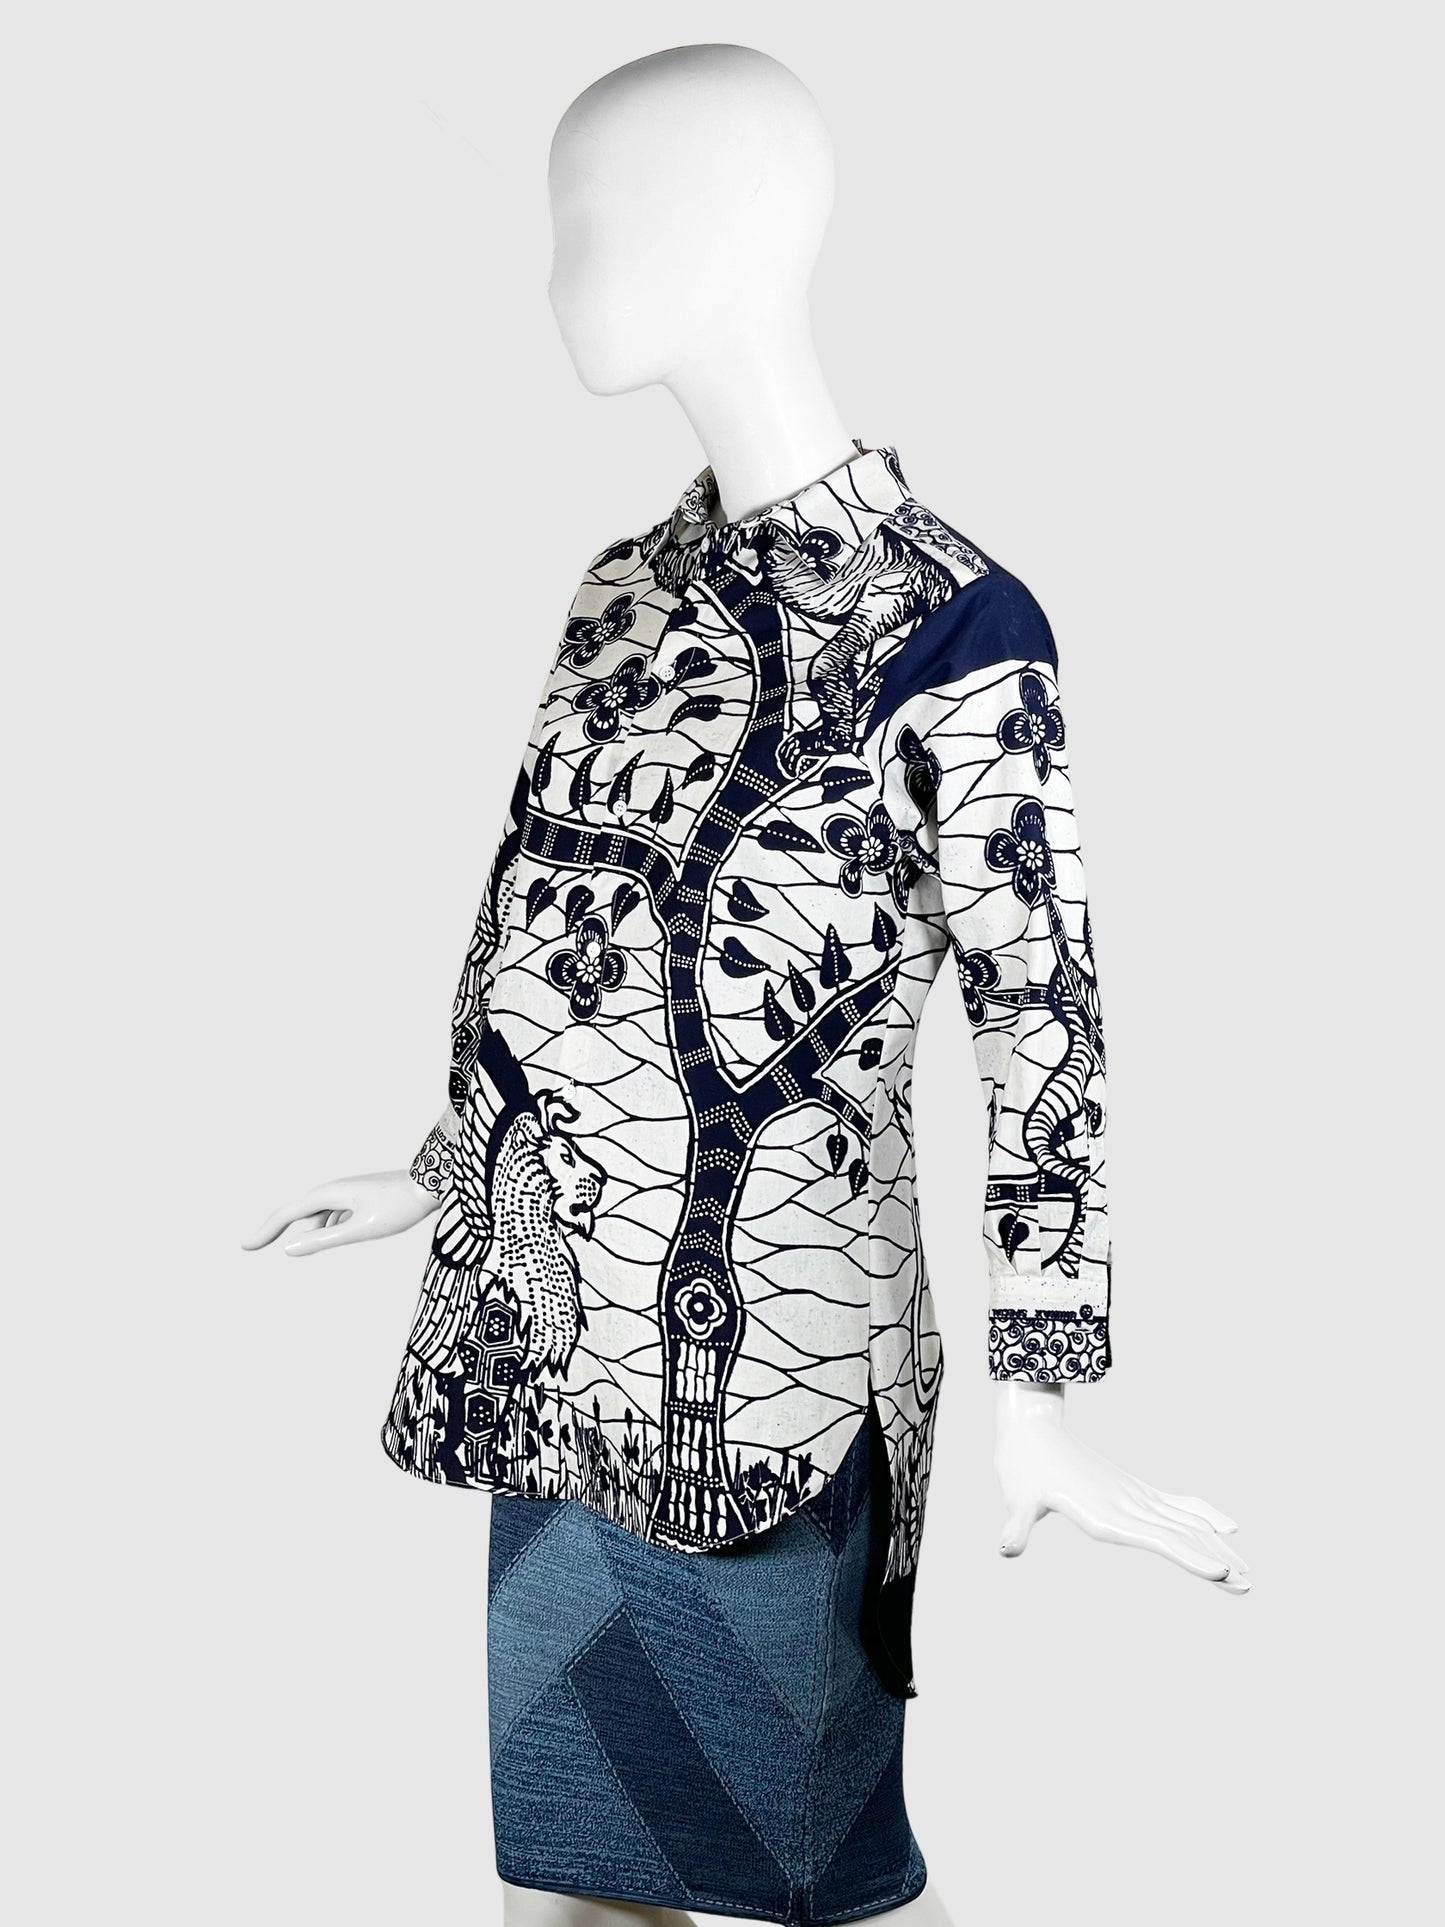 Christian Dior Resort 2020 La Roue de Fortune Cotton Shirt - Size S